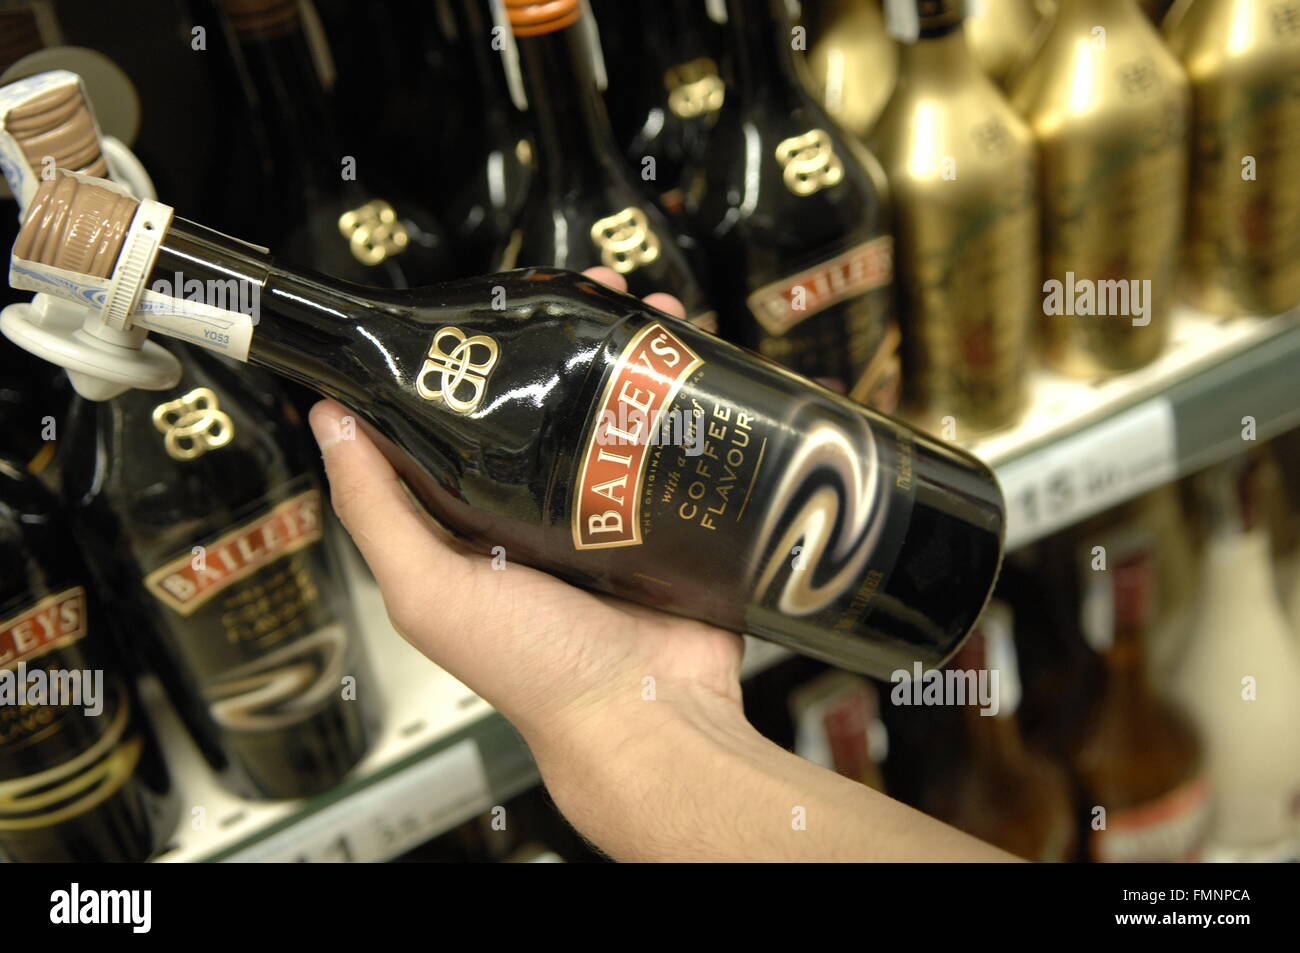 Baileys botella celebrada en Carrefour - Málaga, España Foto de stock